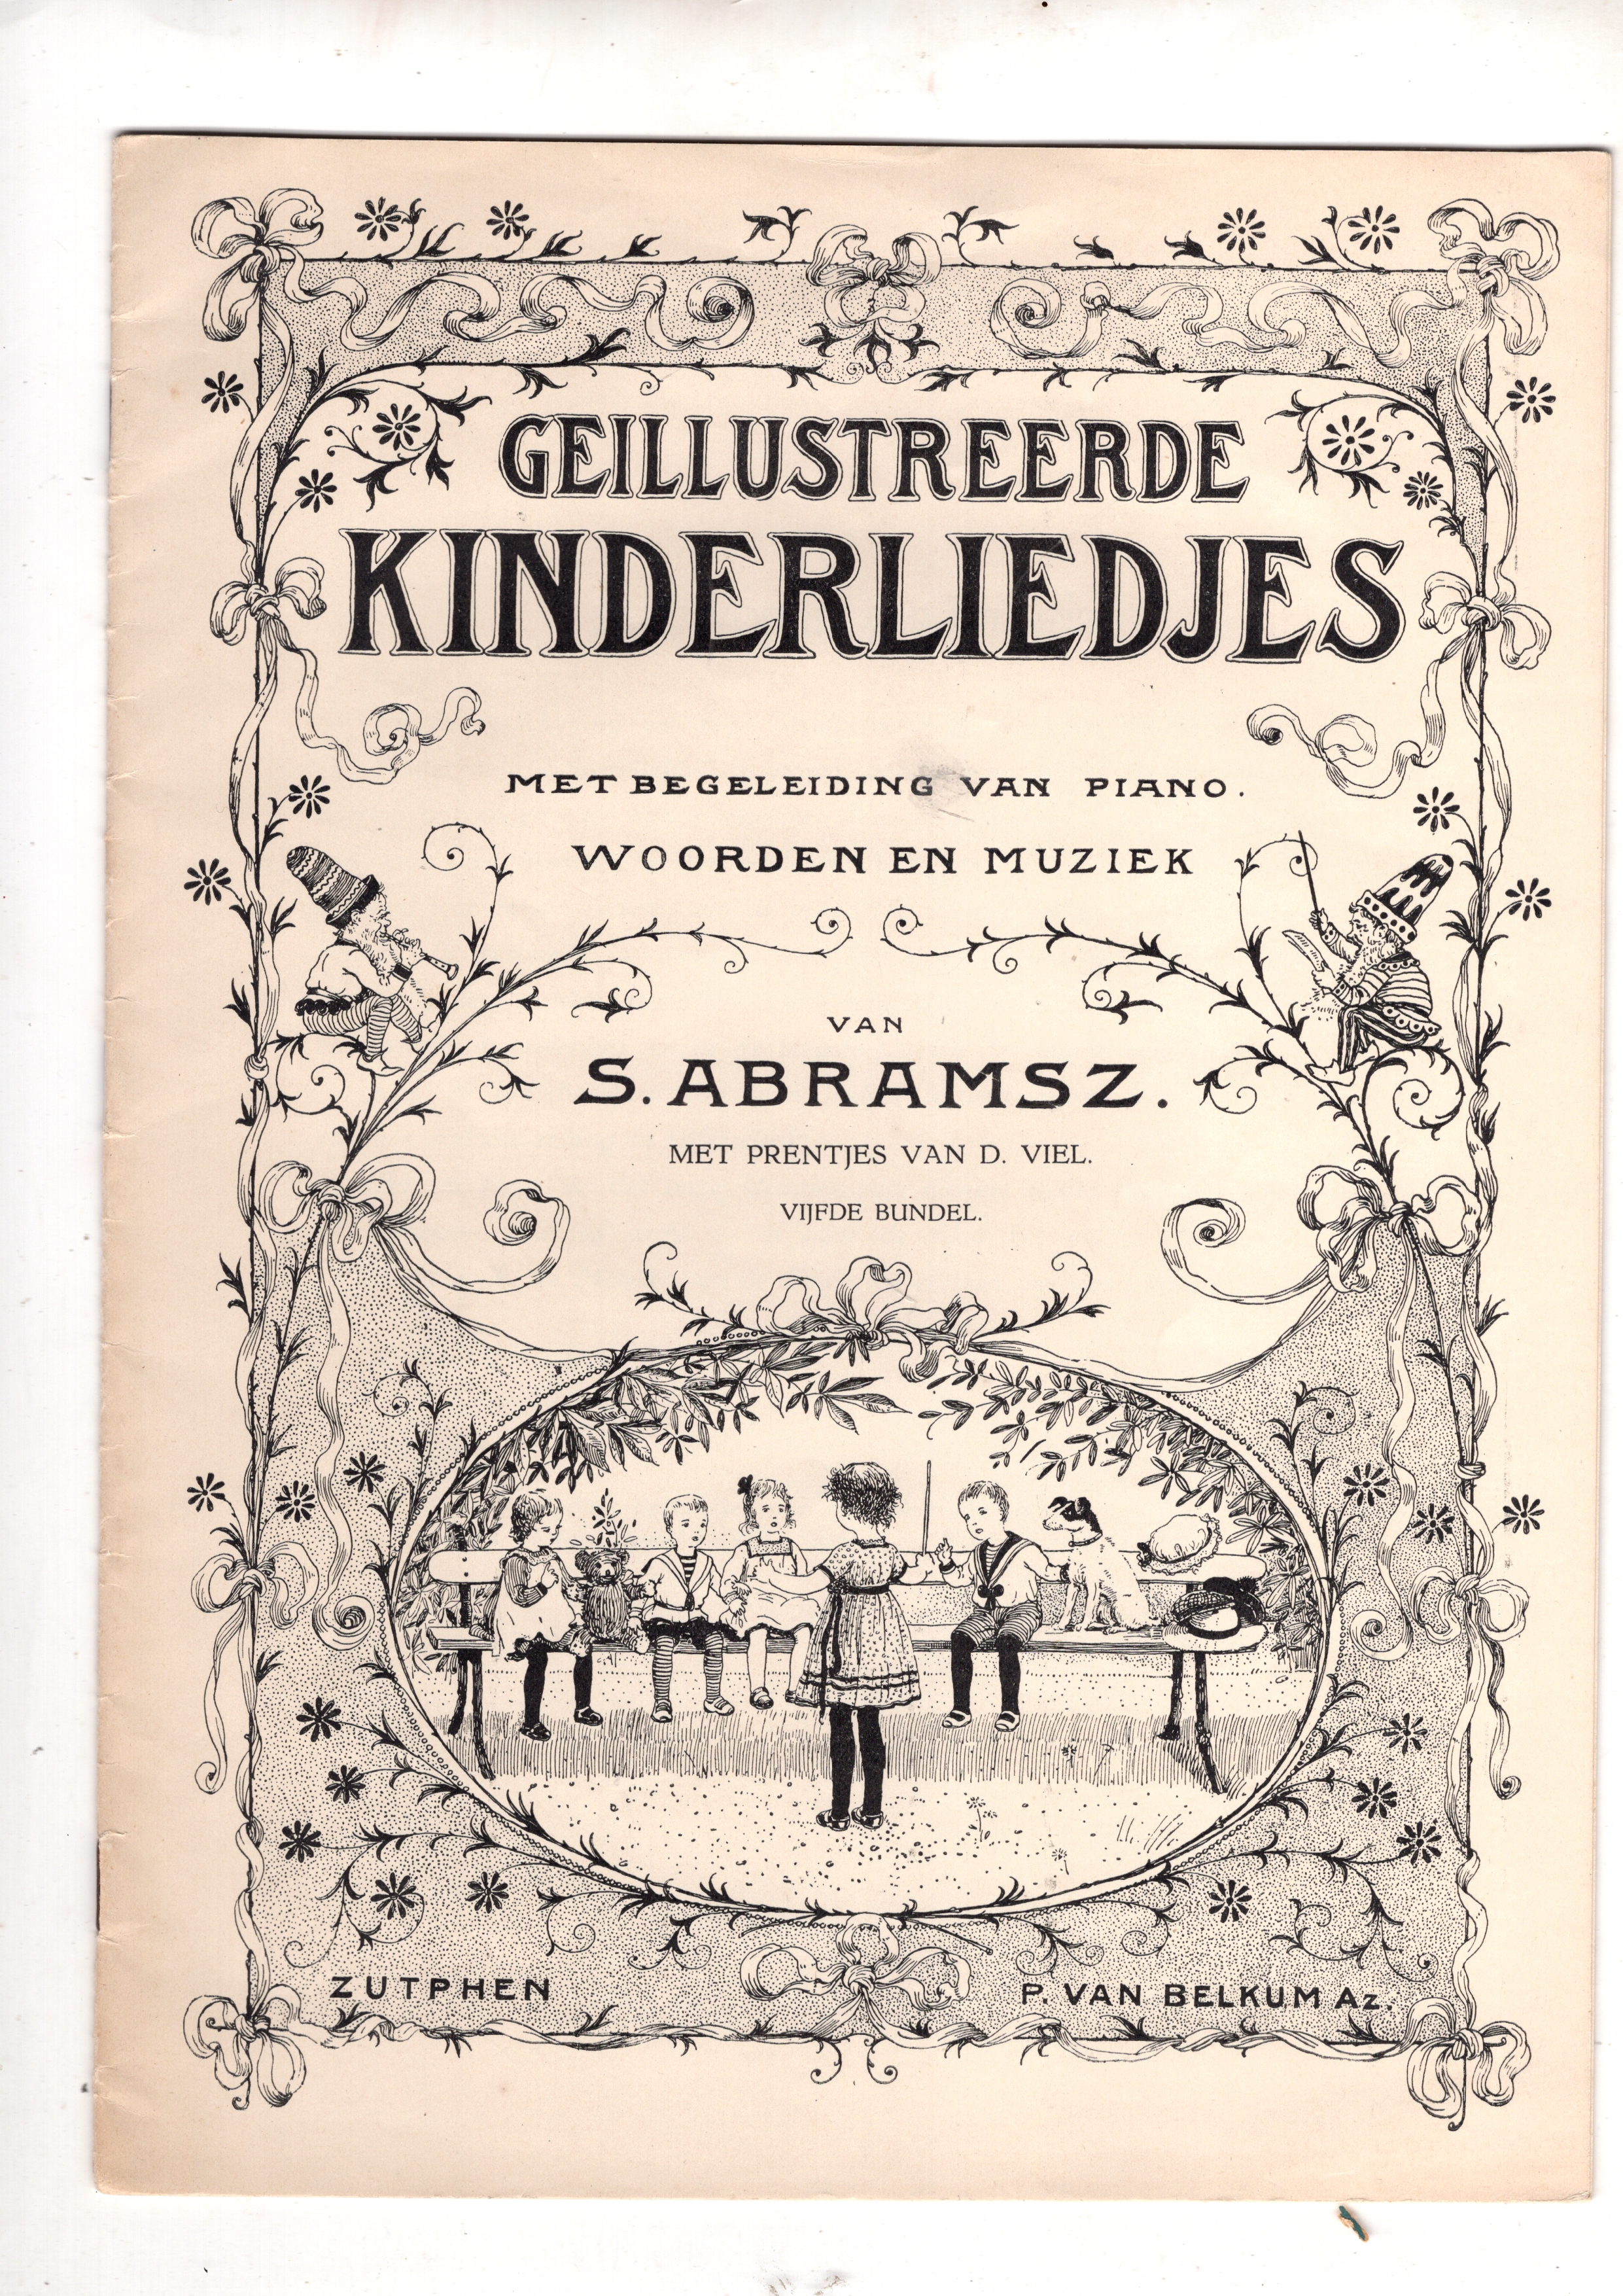 Abramsz, S. - Geillustreerde kinderliedjes met begeleiding van piano. Met prentjes van D. Viel. Vijfde bundel